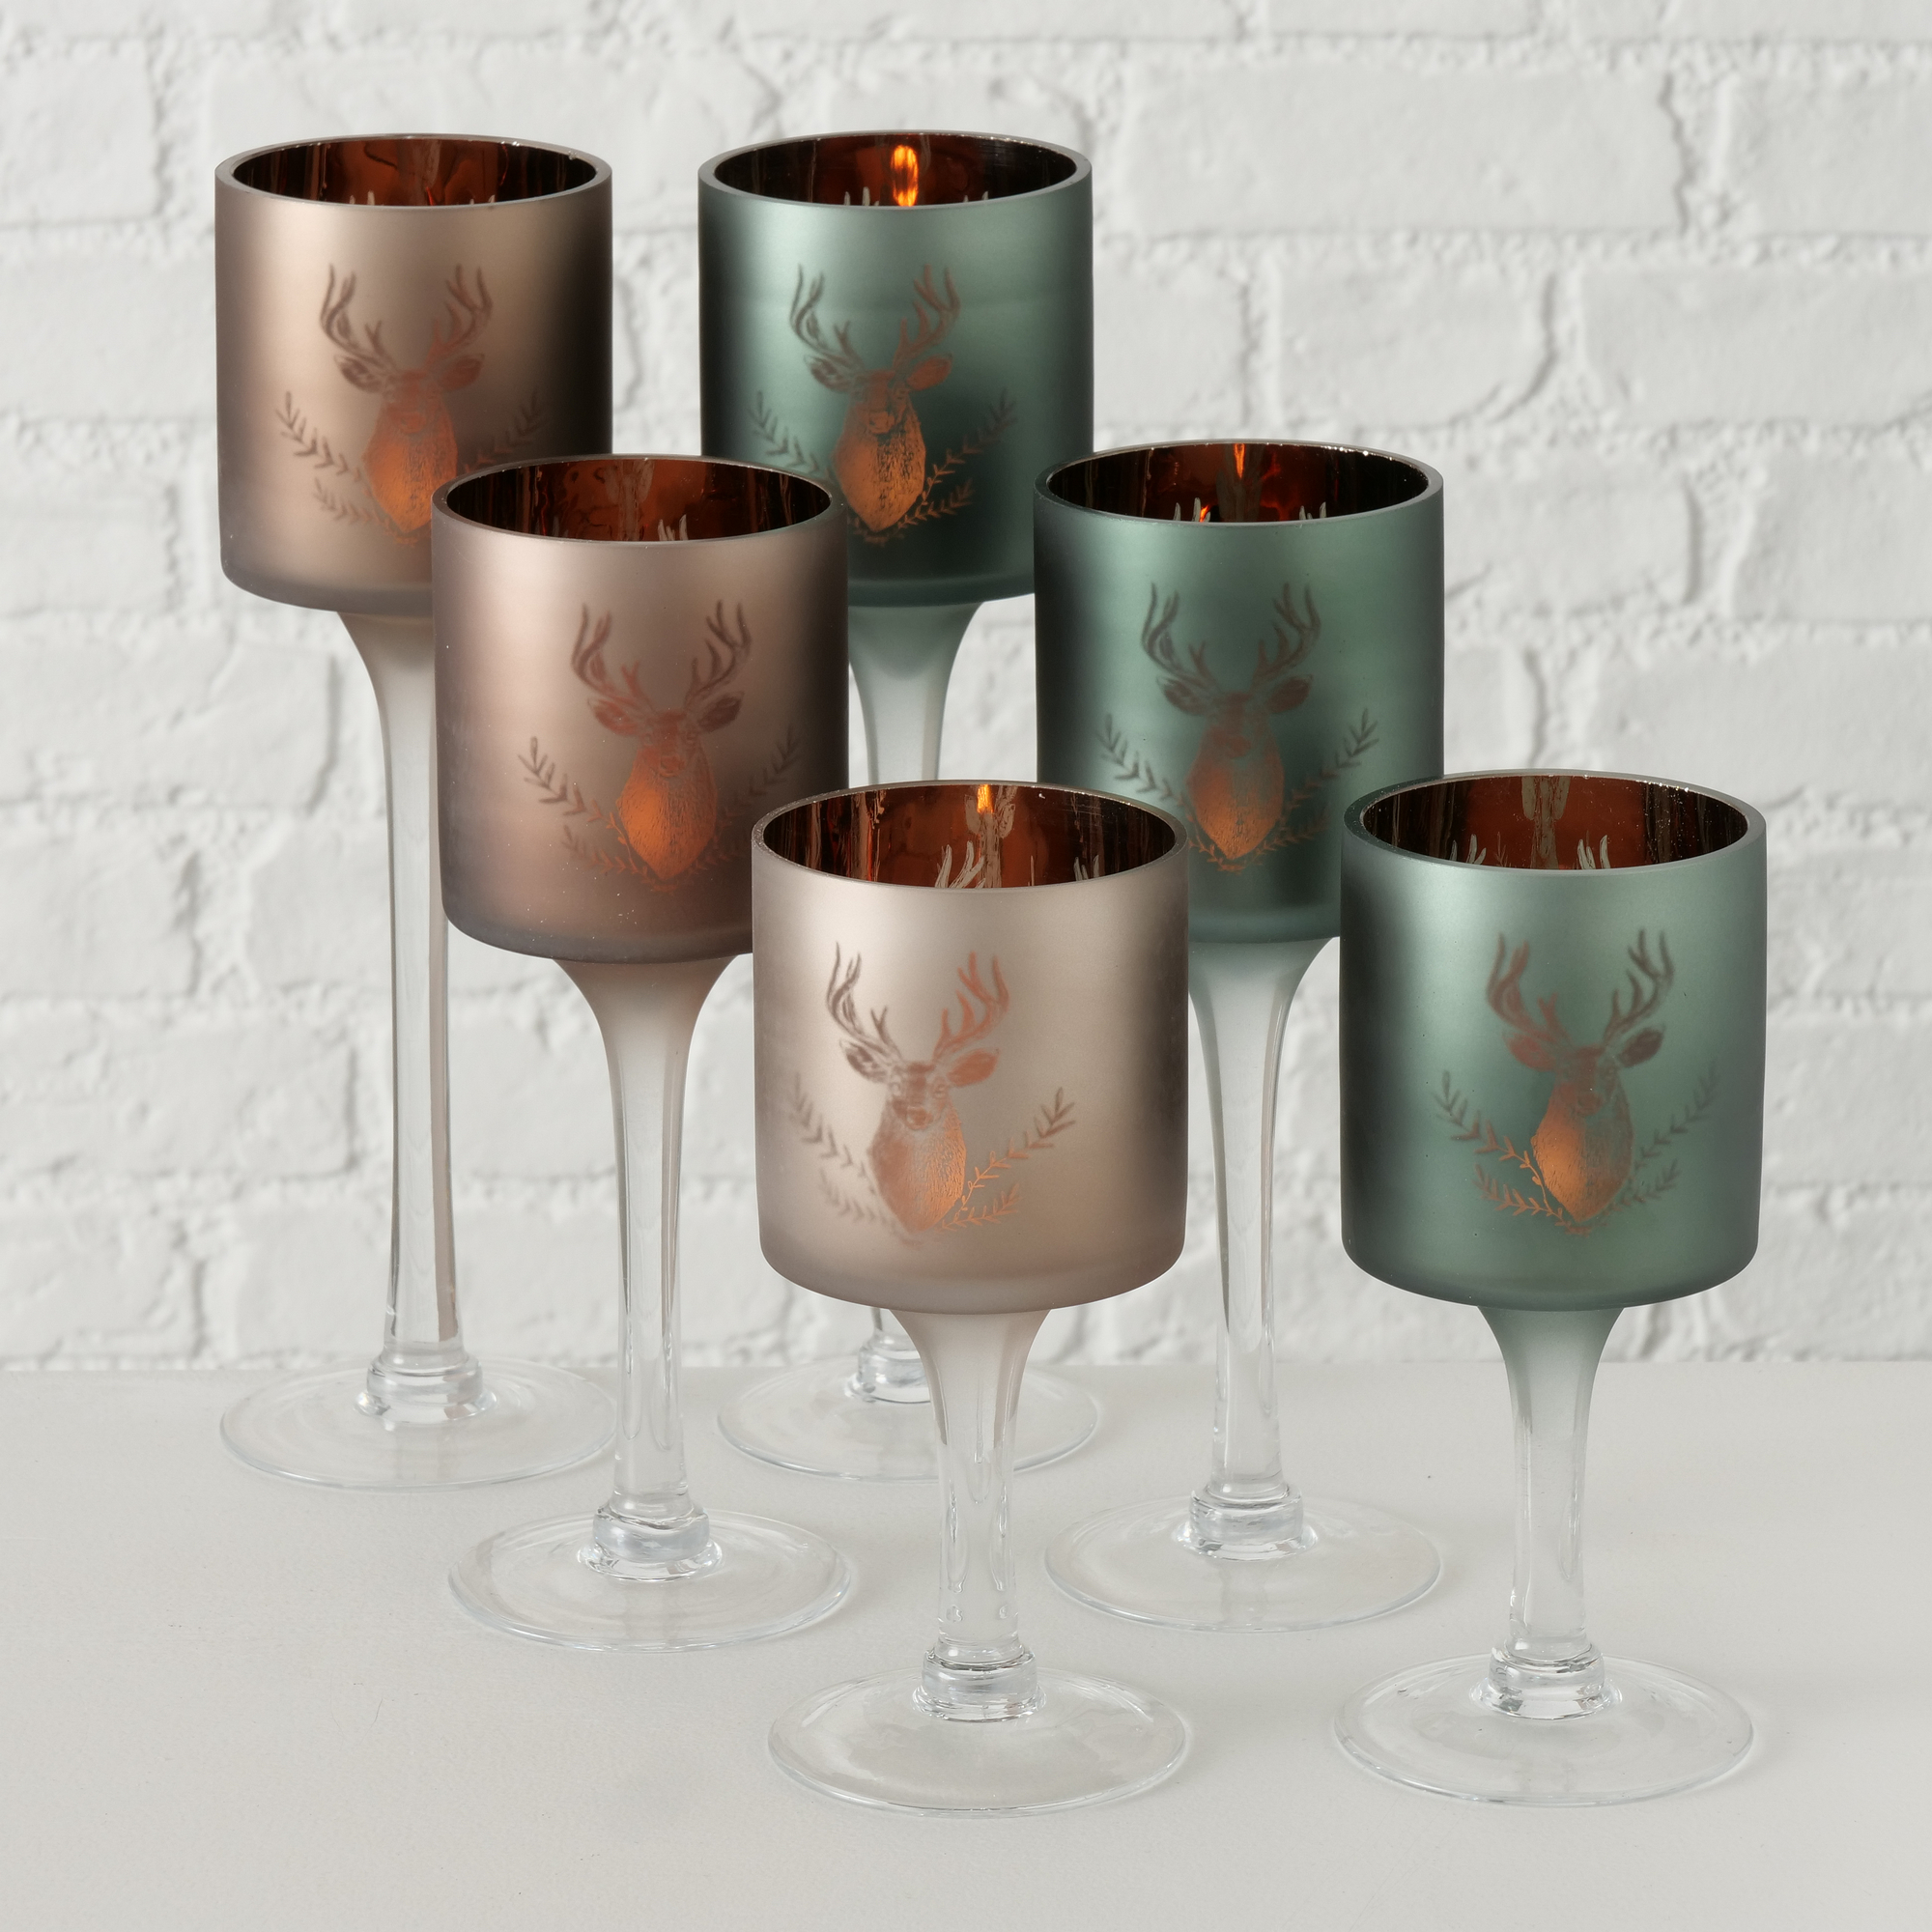 Windlicht 'Rudolf' Glas 30 cm, 2 Farben sortiert + product picture